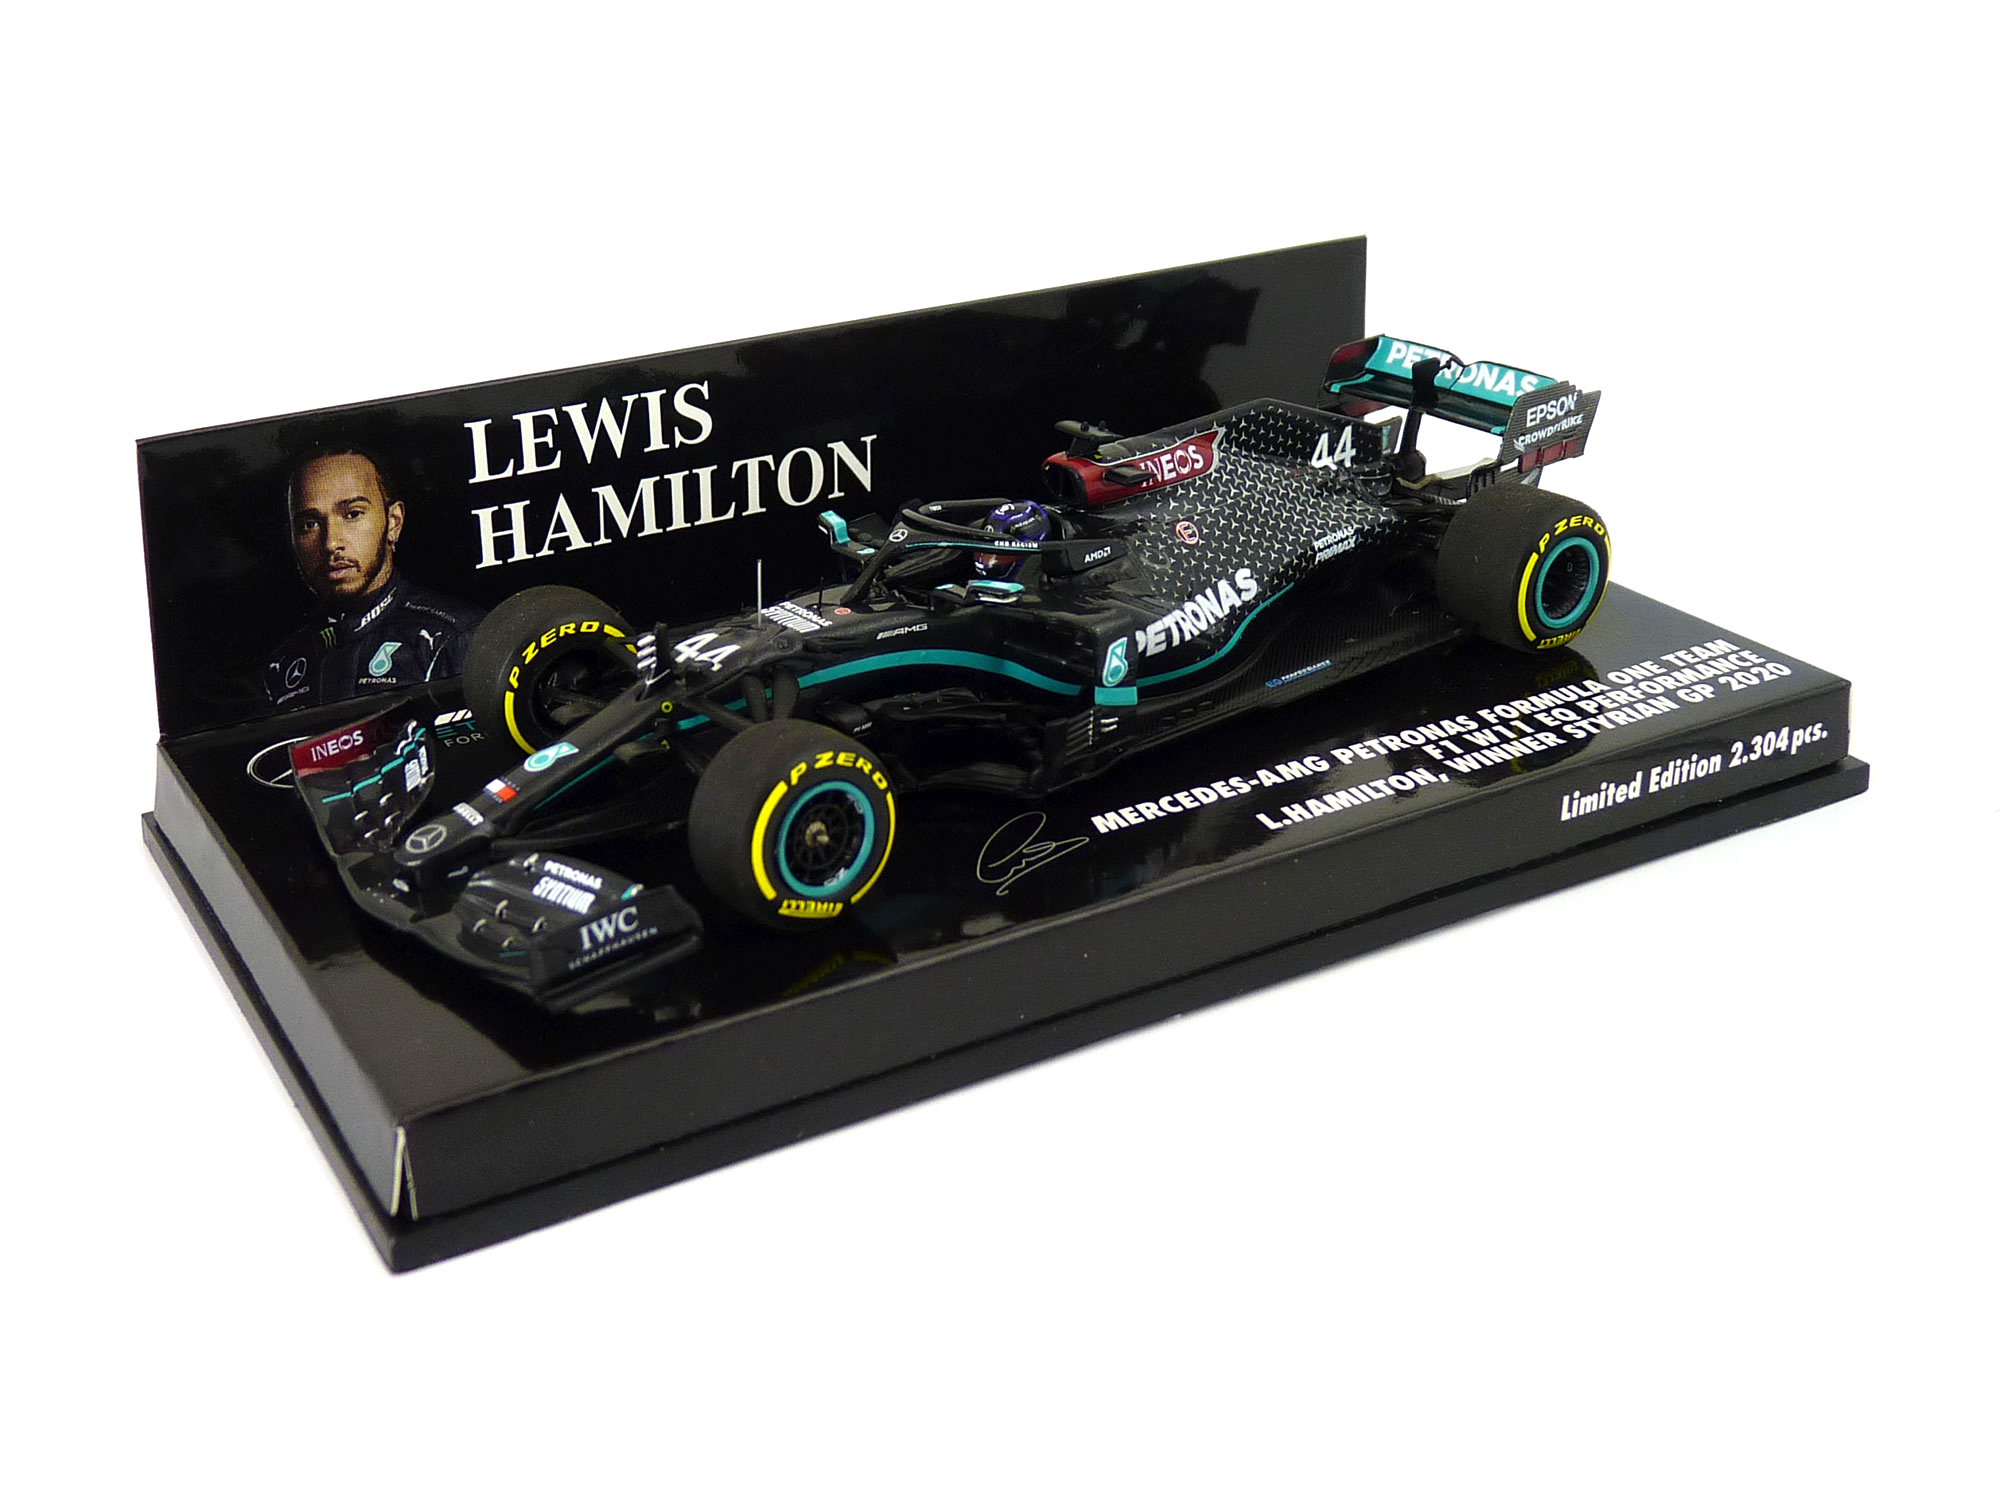 2020 - Lewis Hamilton